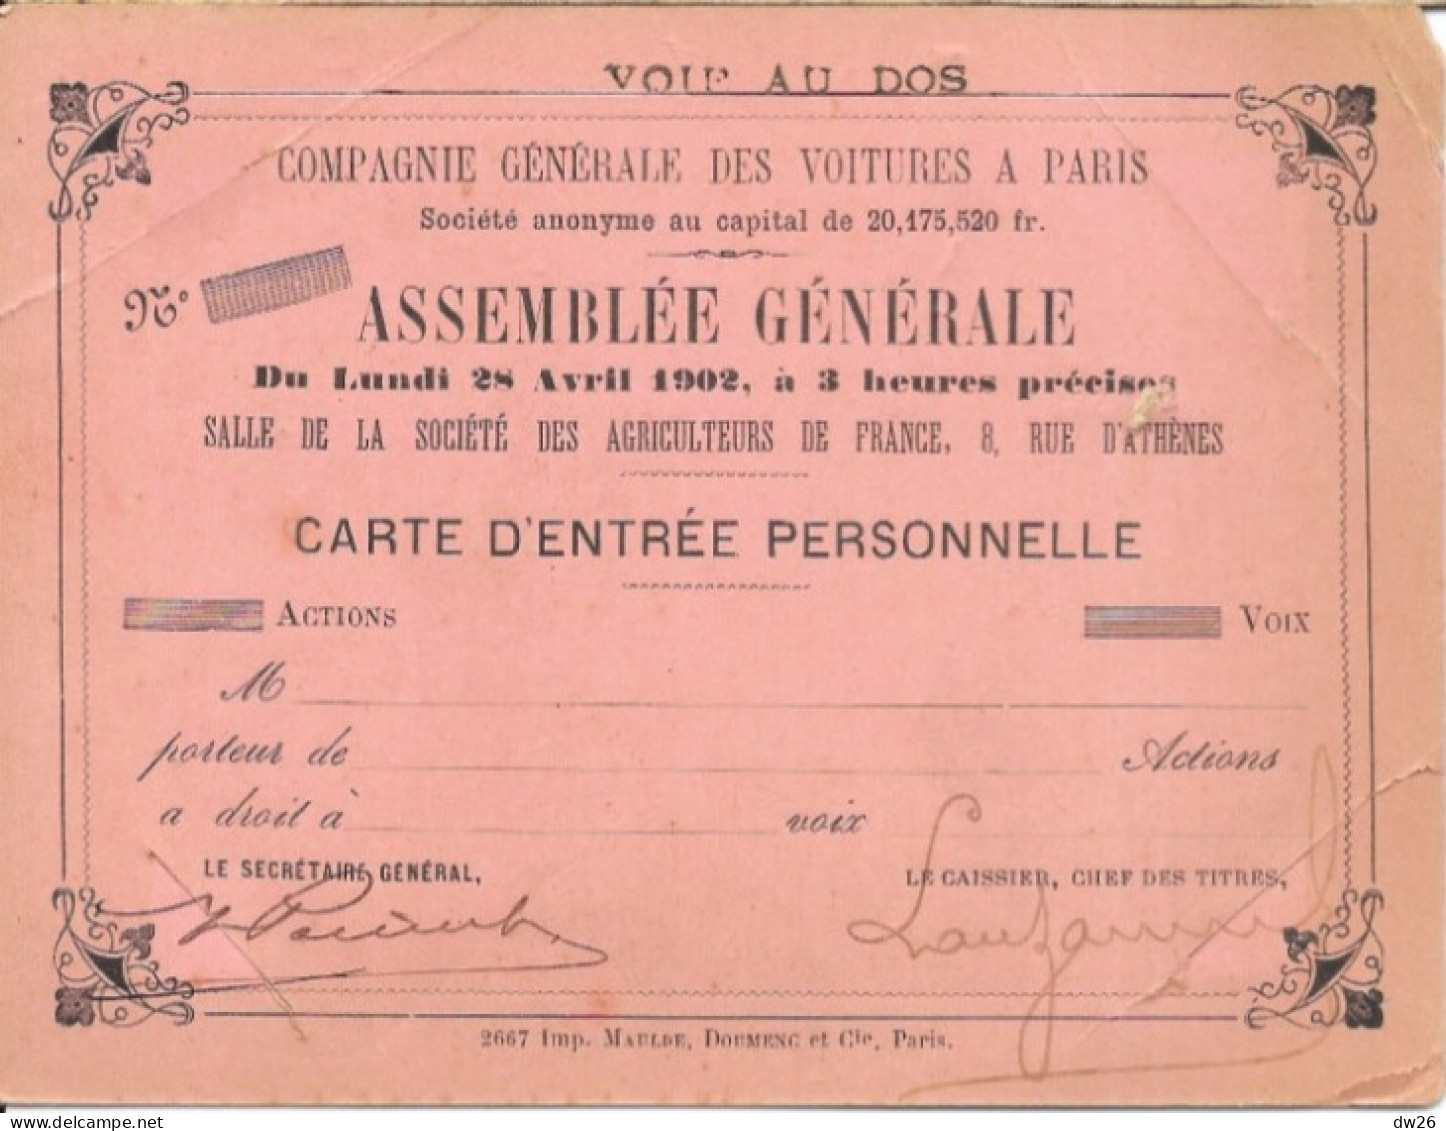 Compagnie Générale Des Voitures à Paris - Carte D'Entrée Pour L'Assemblée Générale 28 Avril 1902 - KFZ